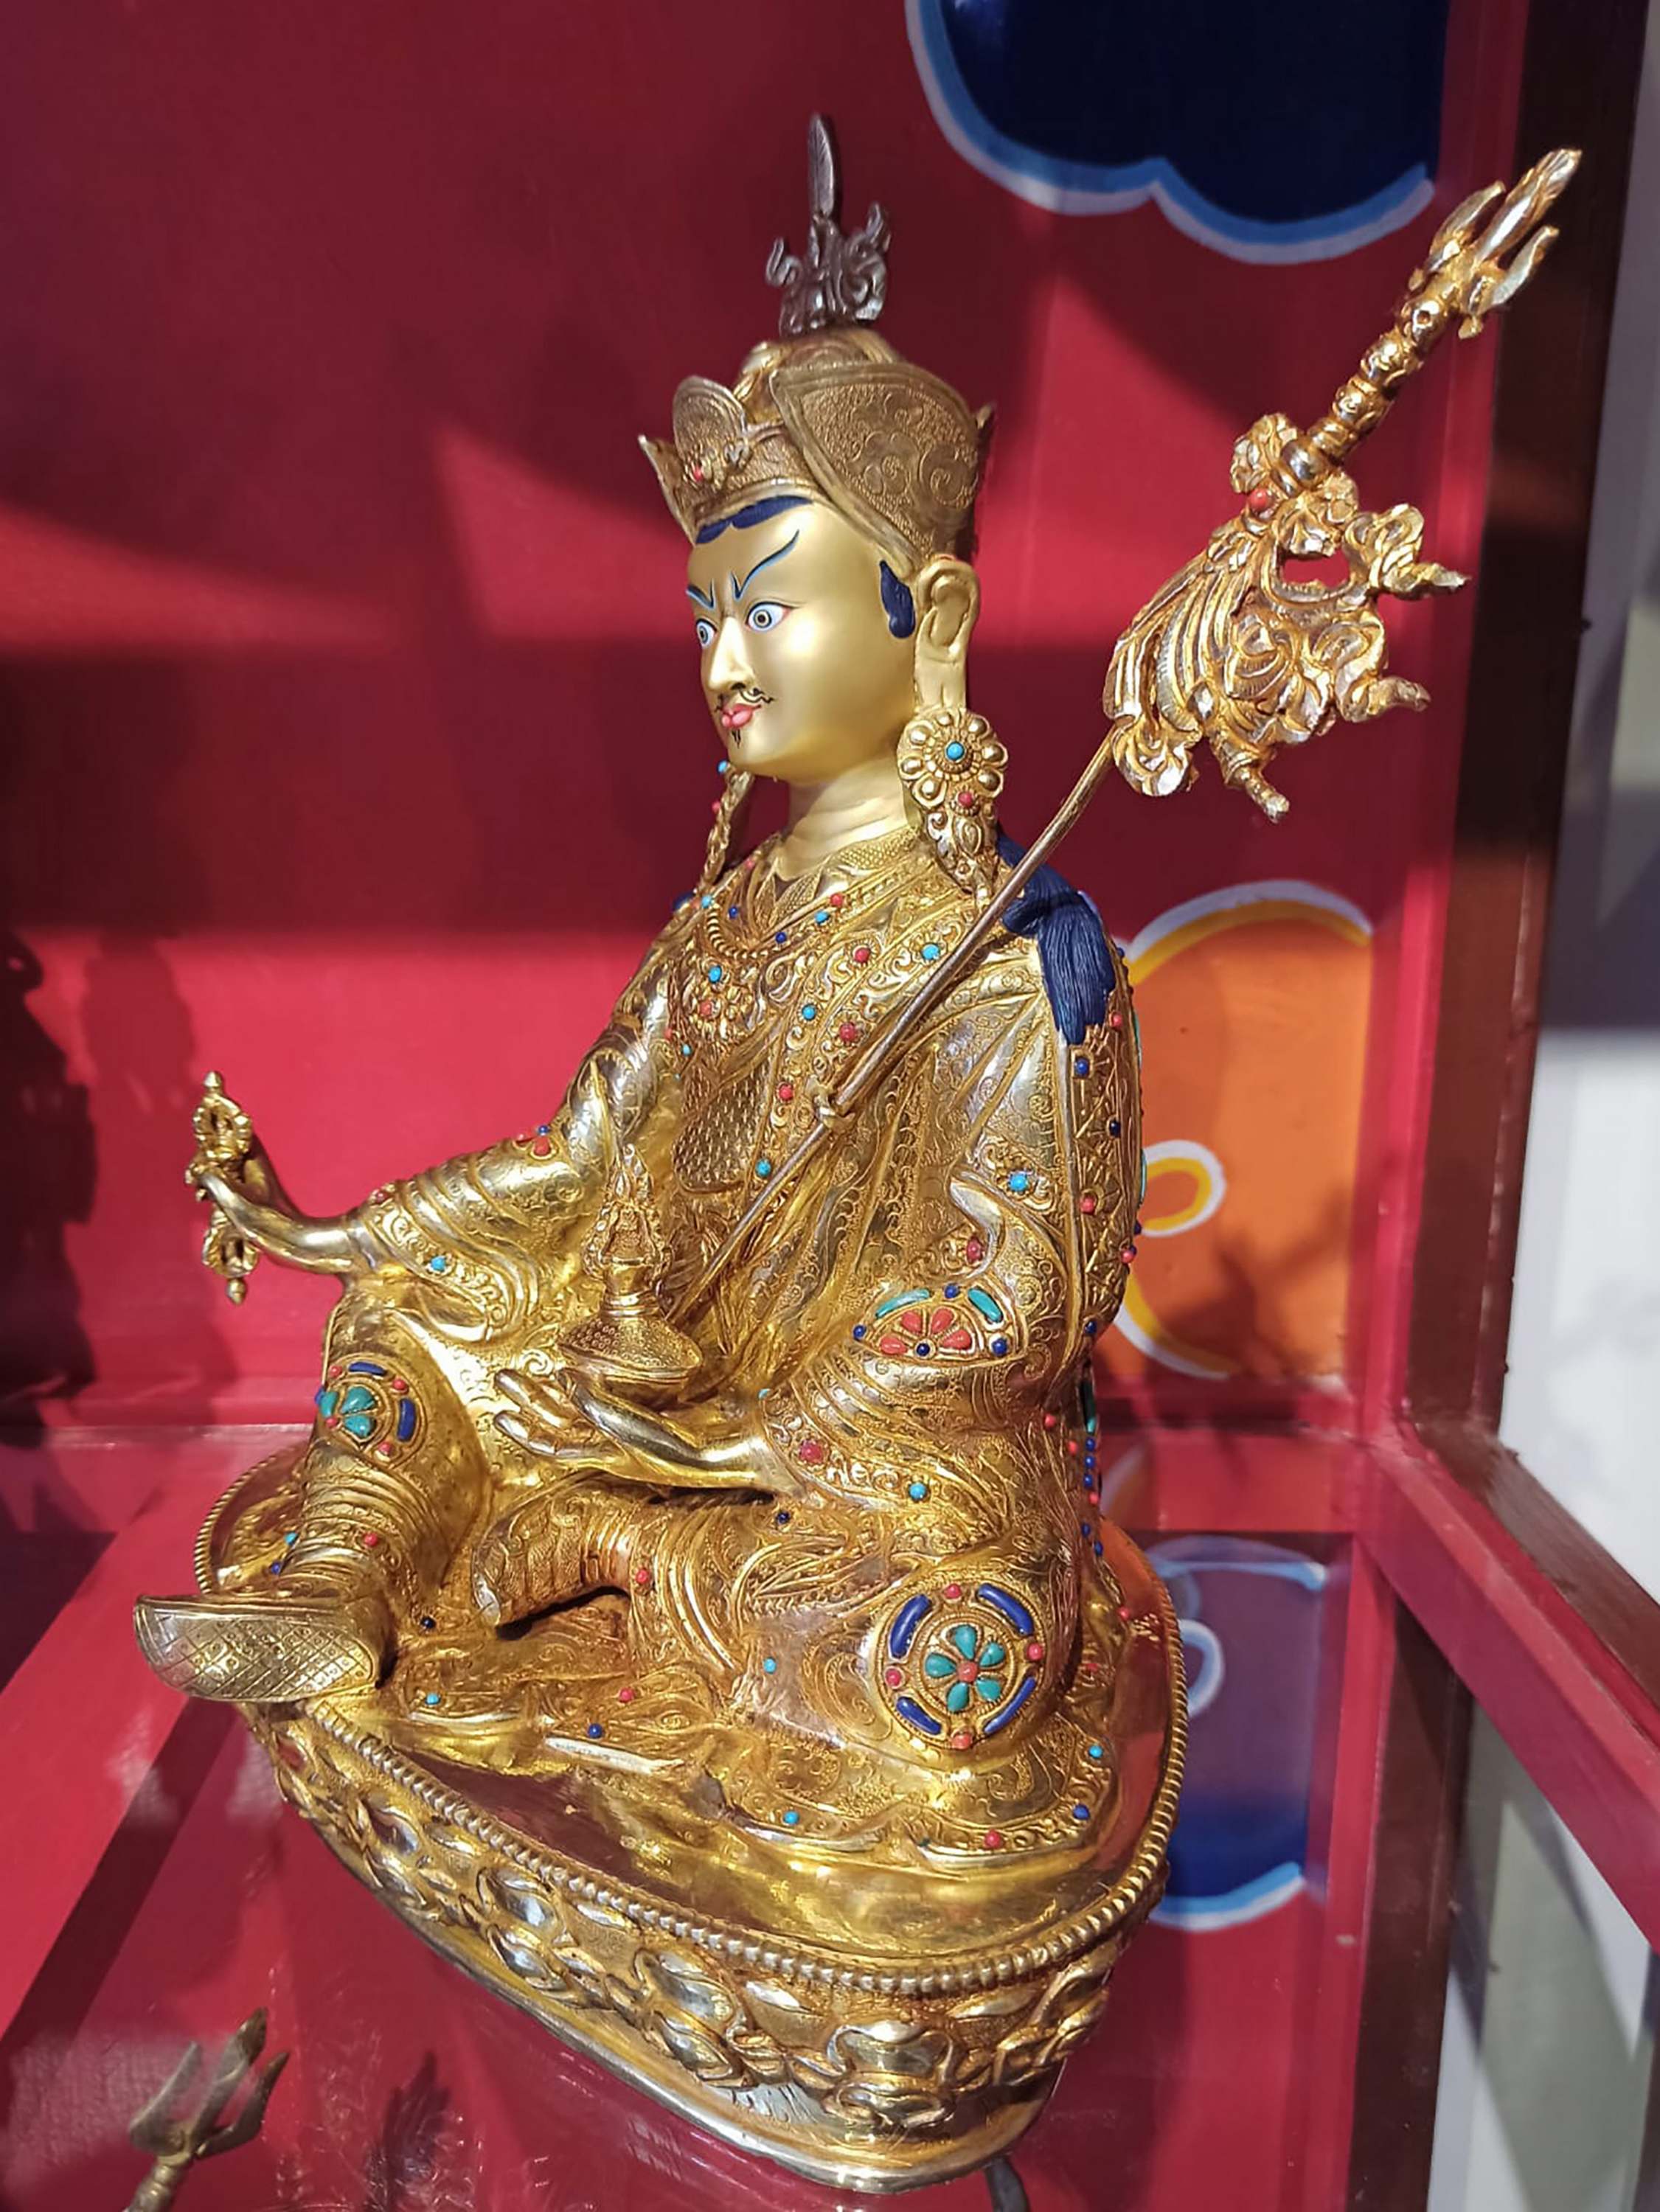 Buddhist Handmade Statue Of Padmasambhava, Guru Rinpuchhe, face Painted, gold Plated, stone Setting